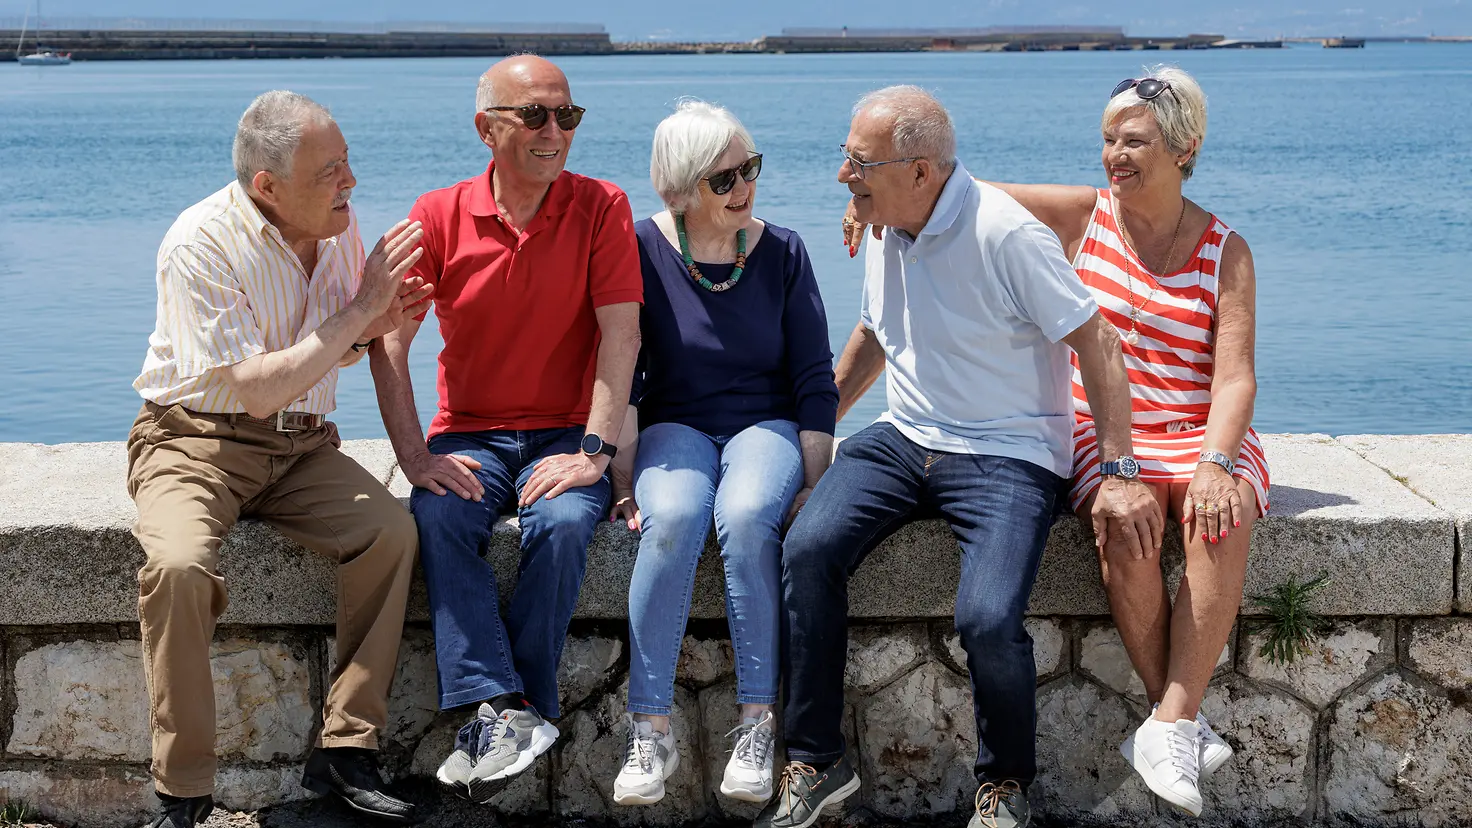 Zu sehen sind fünf ältere Personen, die auf einer Mauer am Meer sitzen